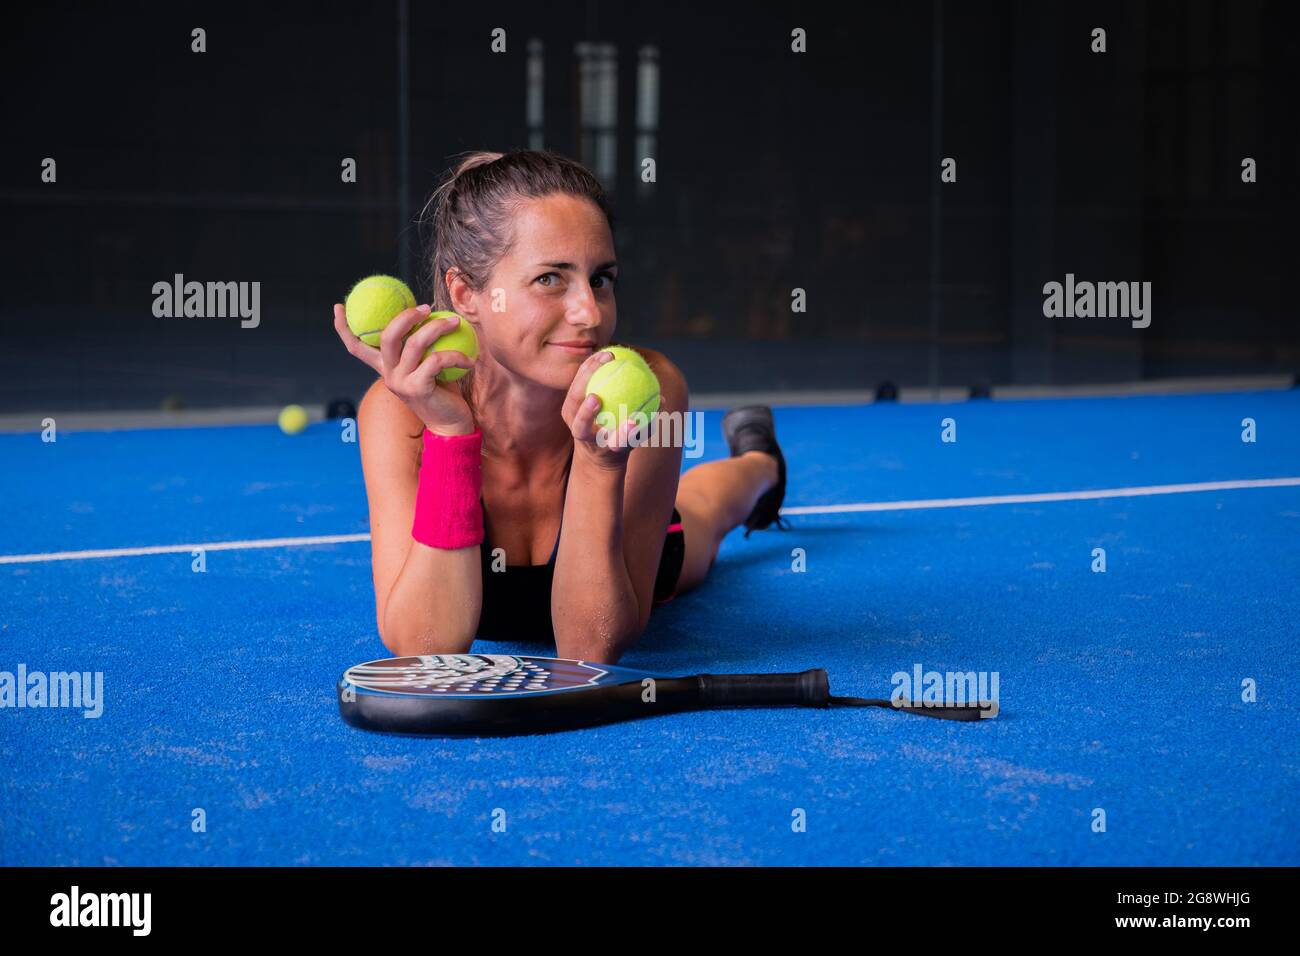 Retrato de una mujer hermosa jugando pista de padel tenis interior Foto de stock